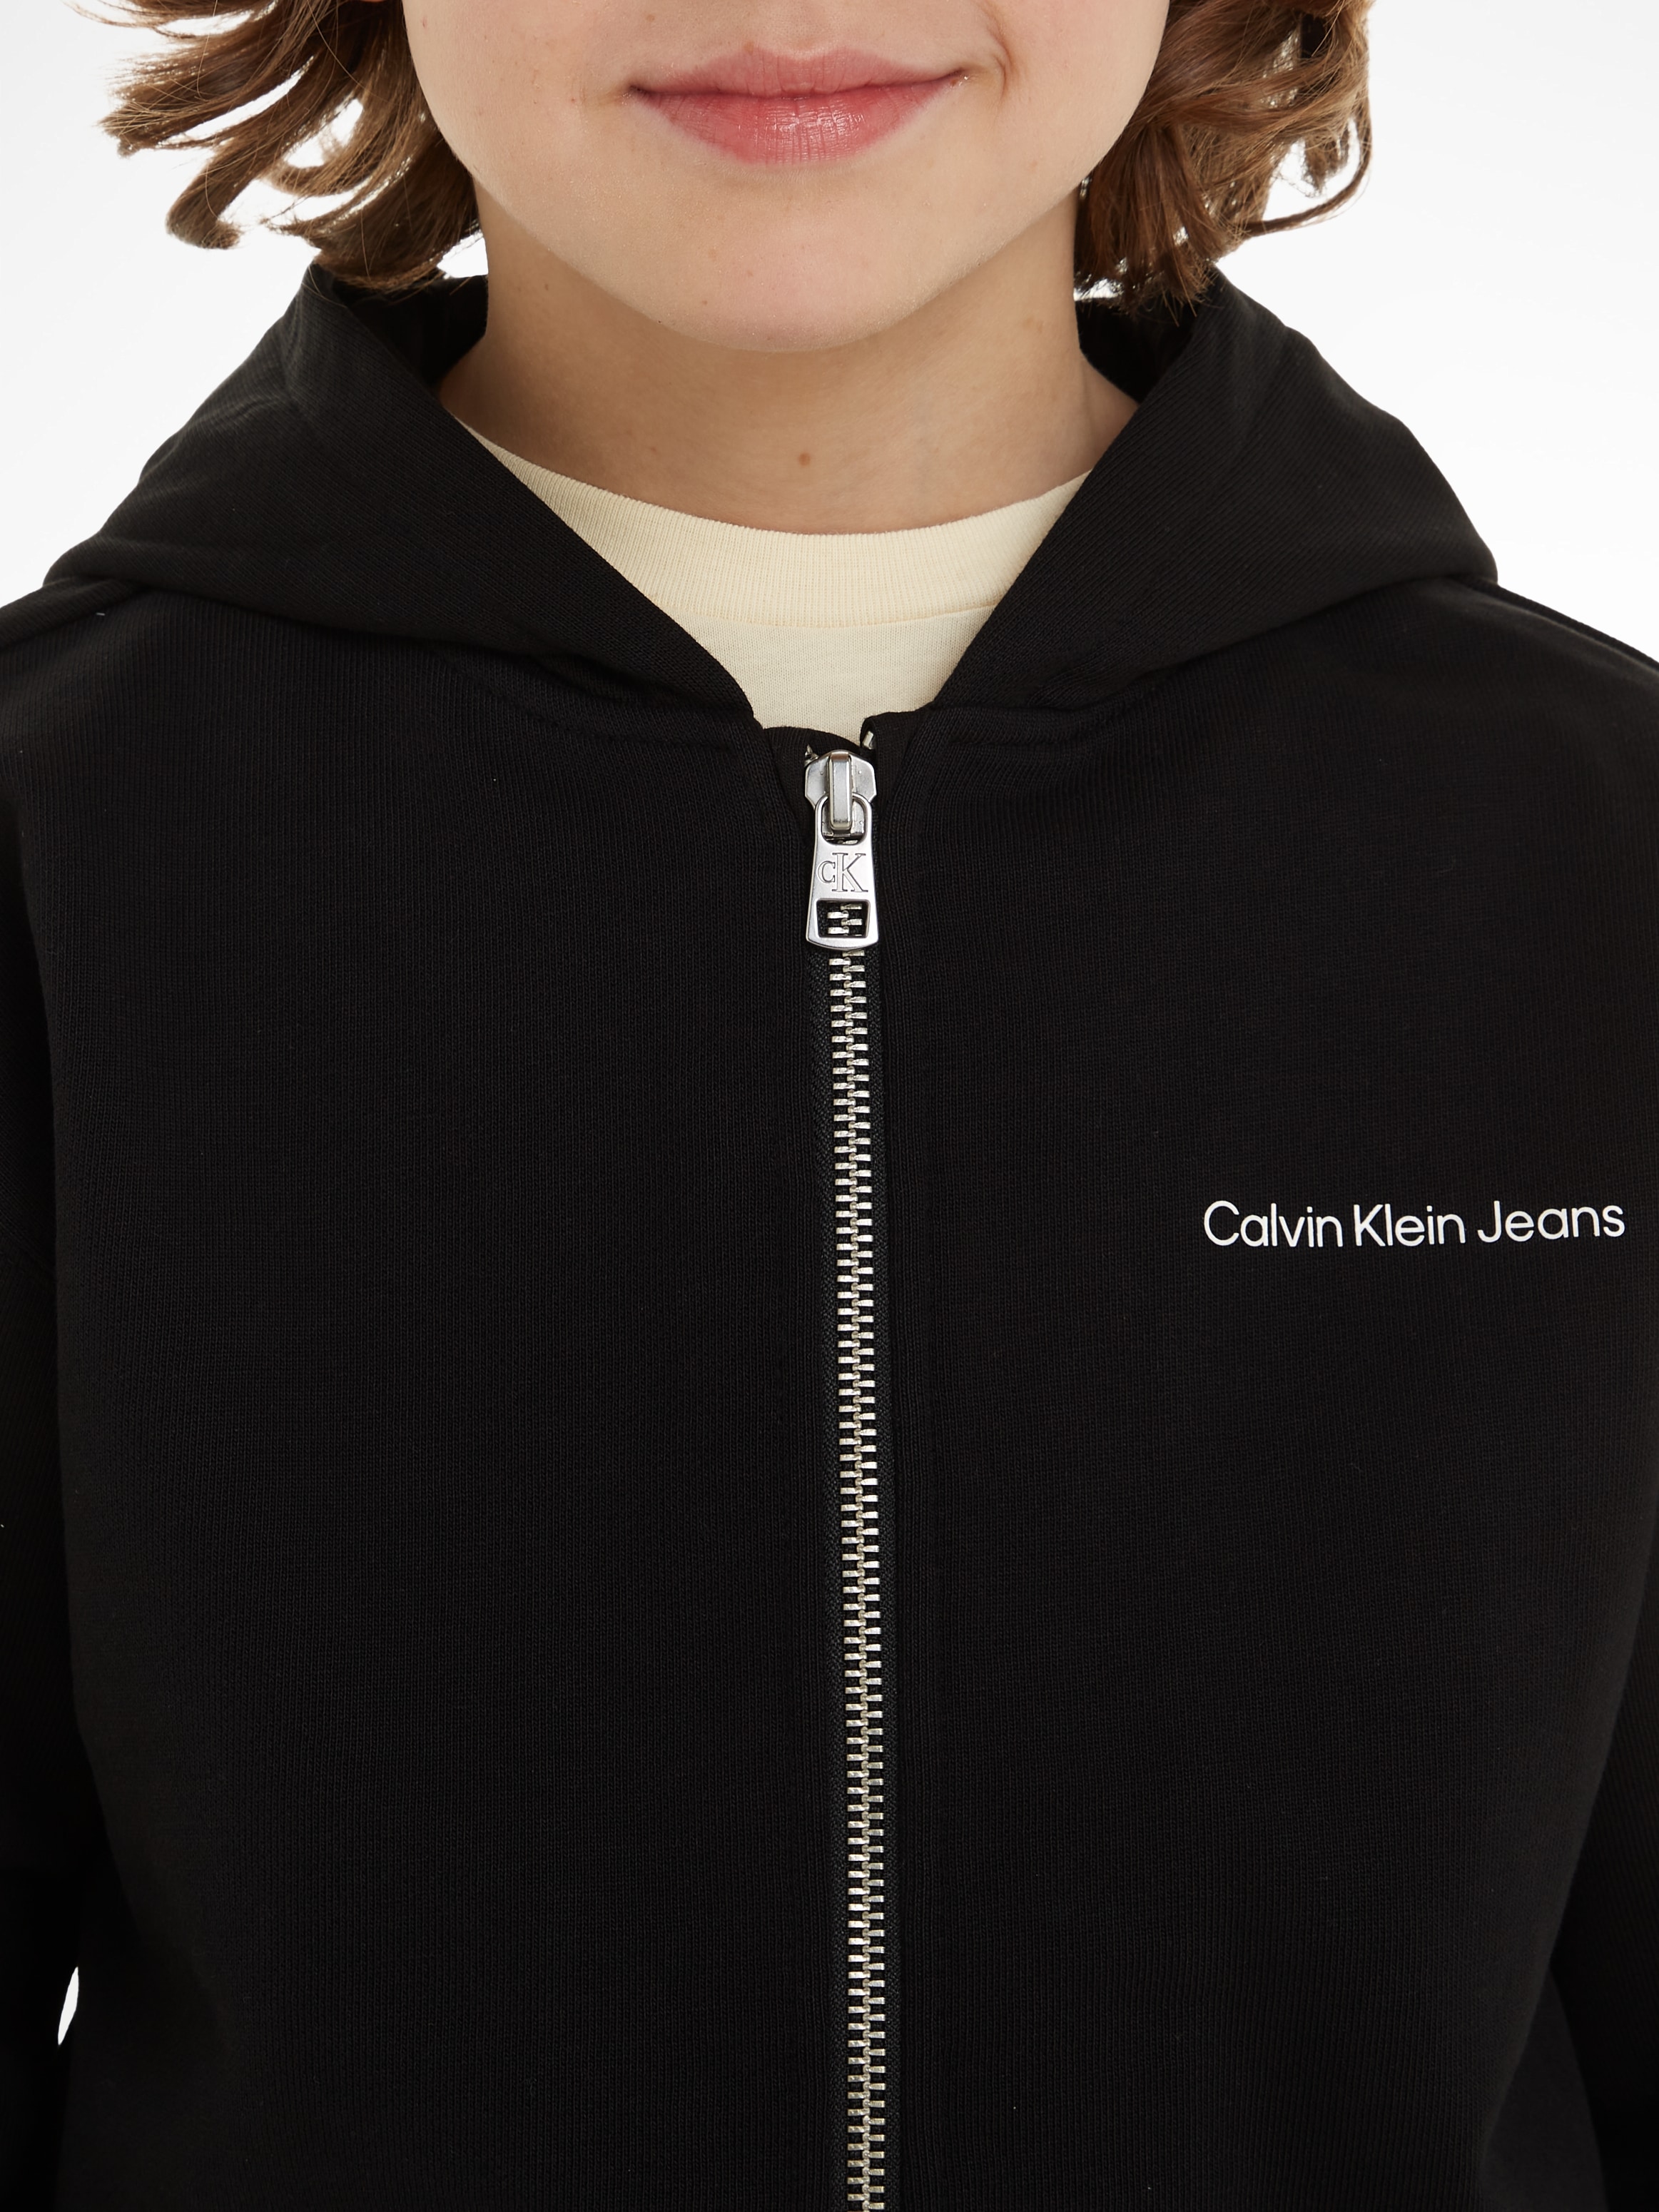 Calvin Klein Jeans Sweatshirt »INST. LOGO RELAXED ZIP-THROUGH«, für Kinder bis 16 Jahre